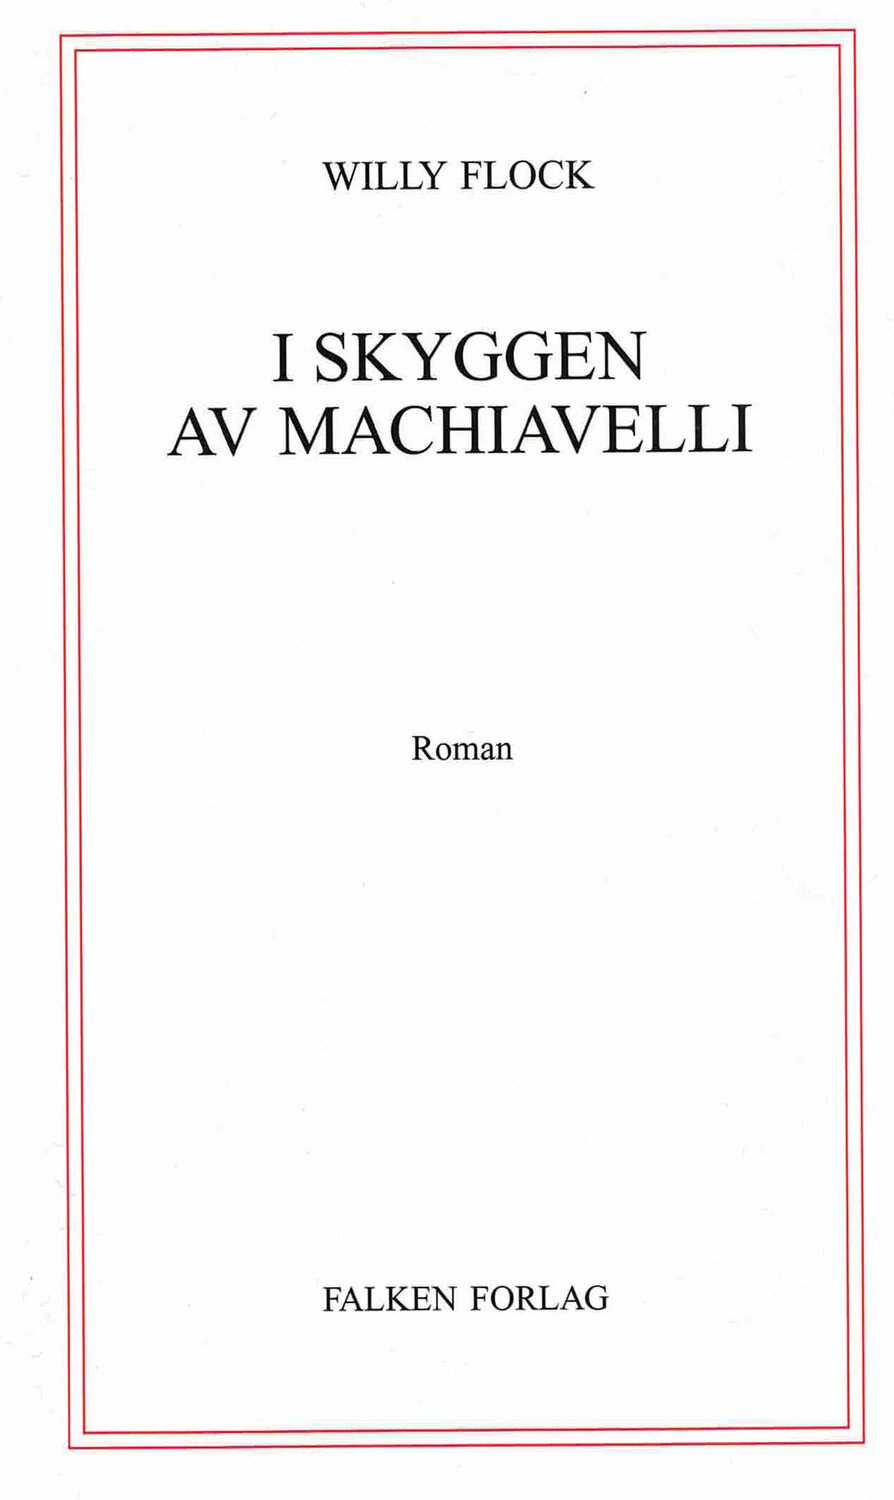 I skyggen av Machiavelli